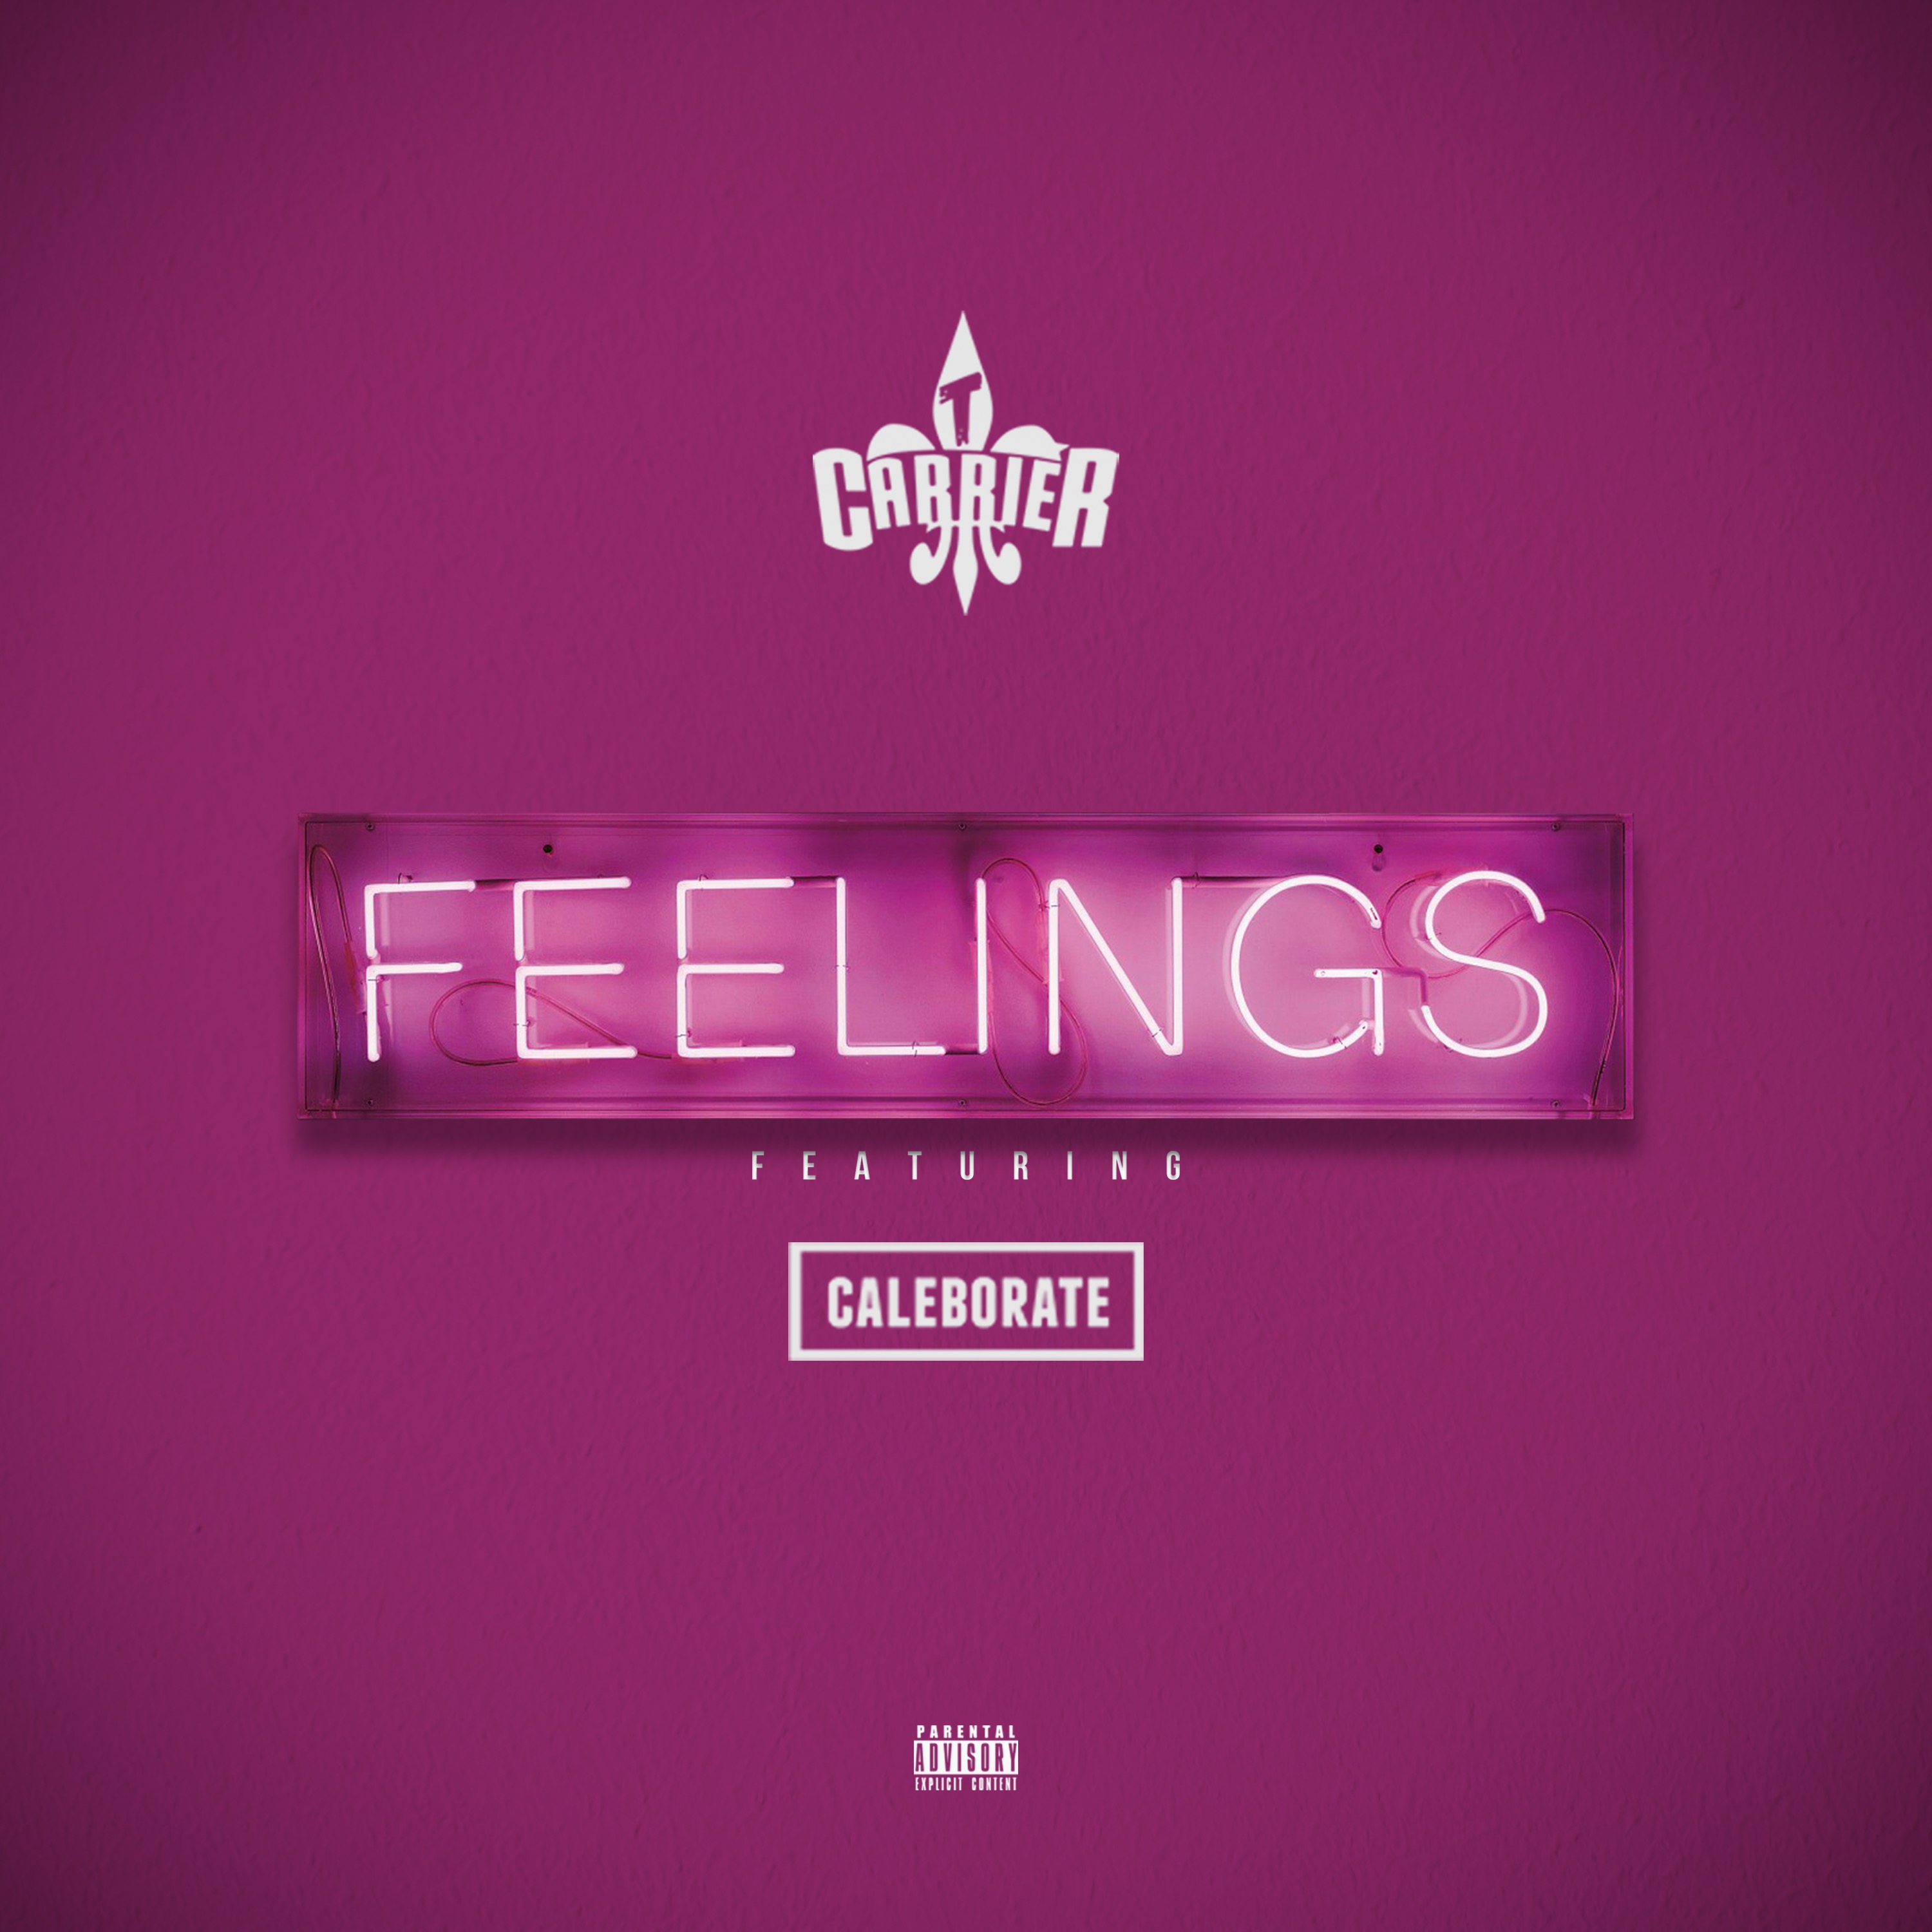 Feel ft. Feeling песня. The feels album. Feel your feelings. Обложка песни no feelings.